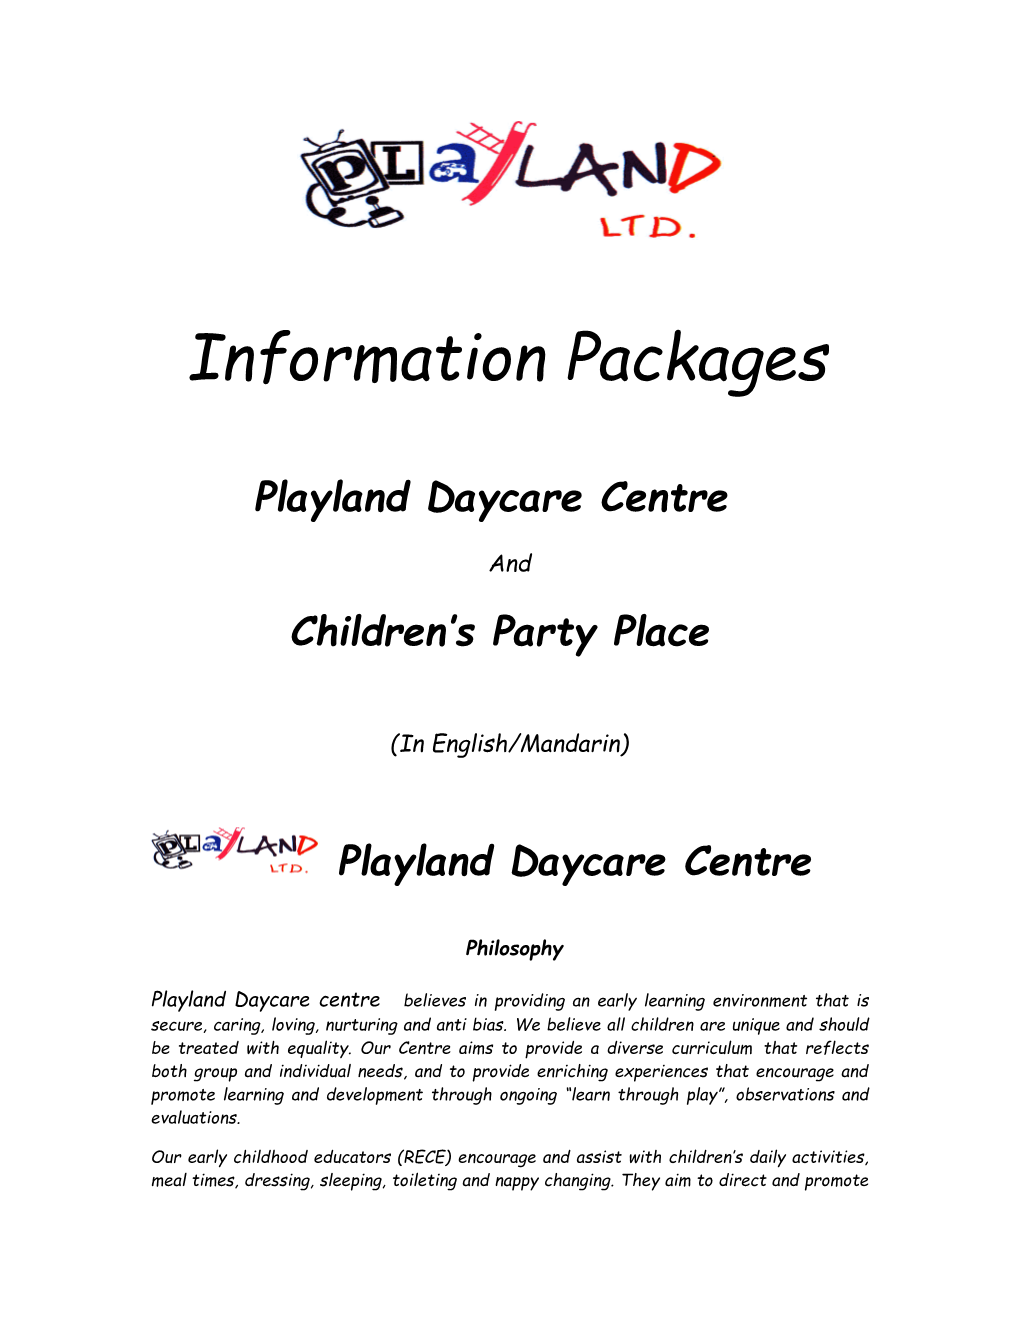 Playland Daycare Centre